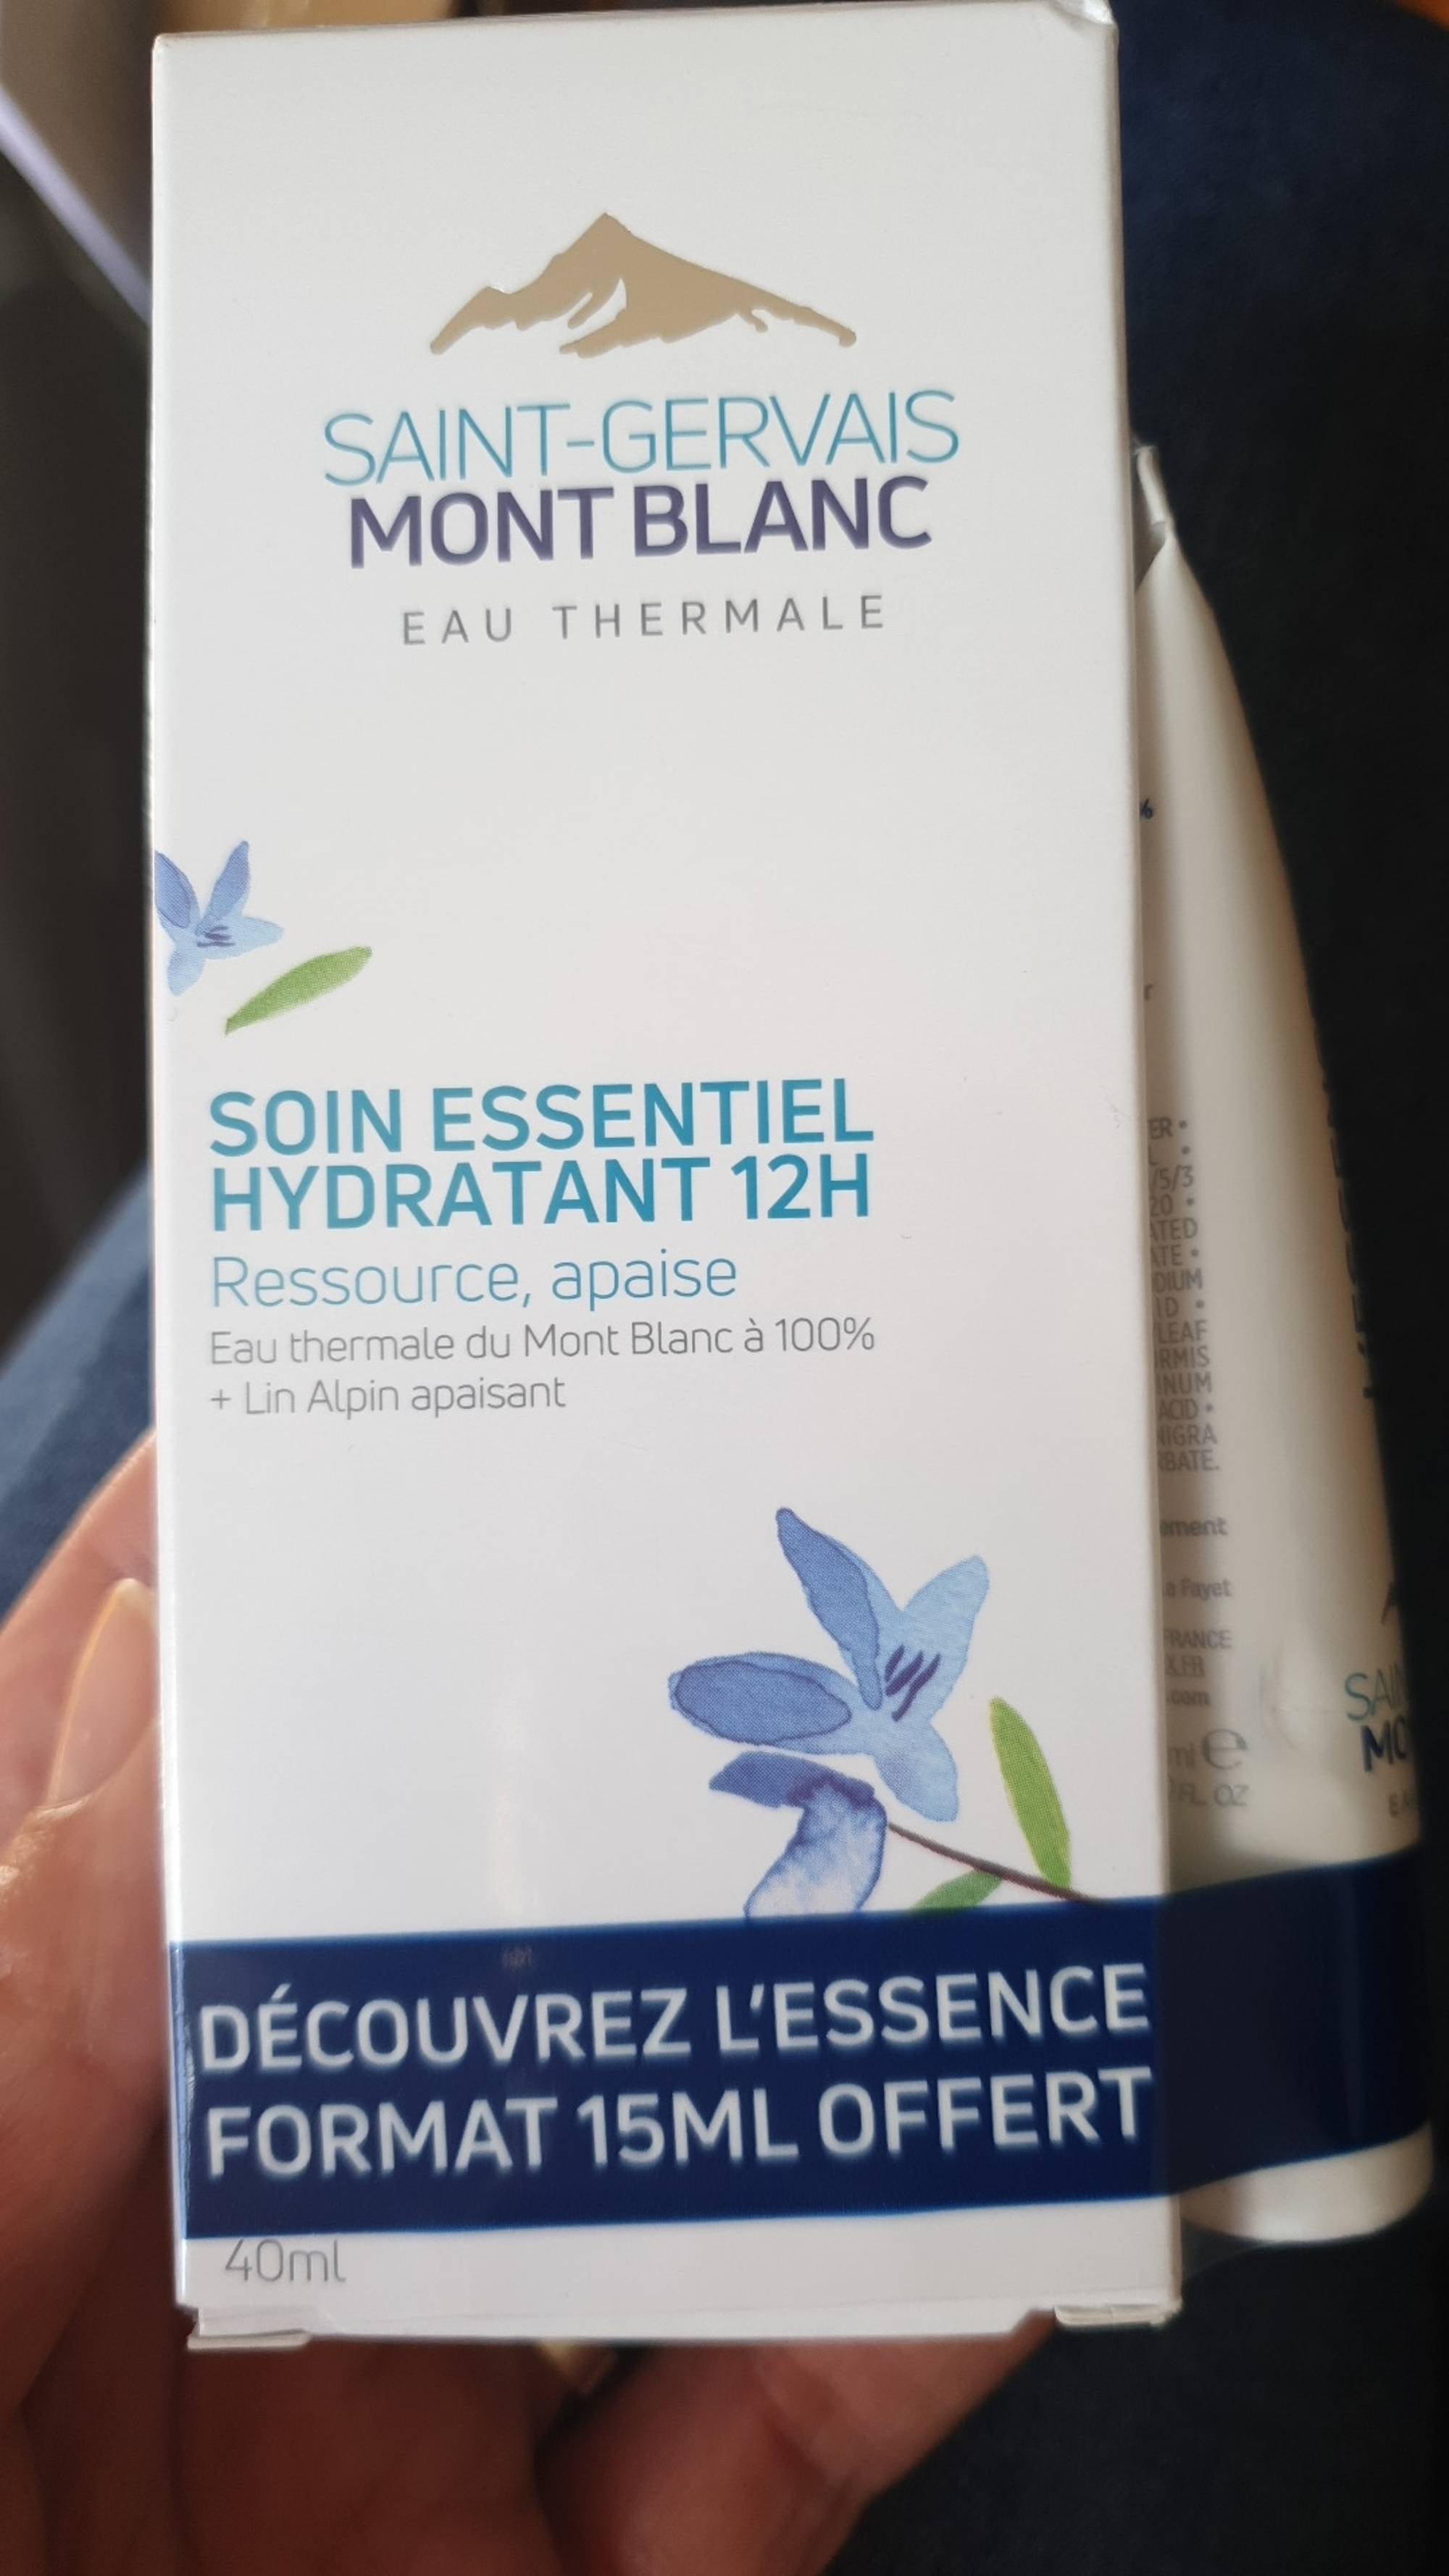 SAINT-GERVAIS MONT BLANC - Soin essentiel hydratant 12h